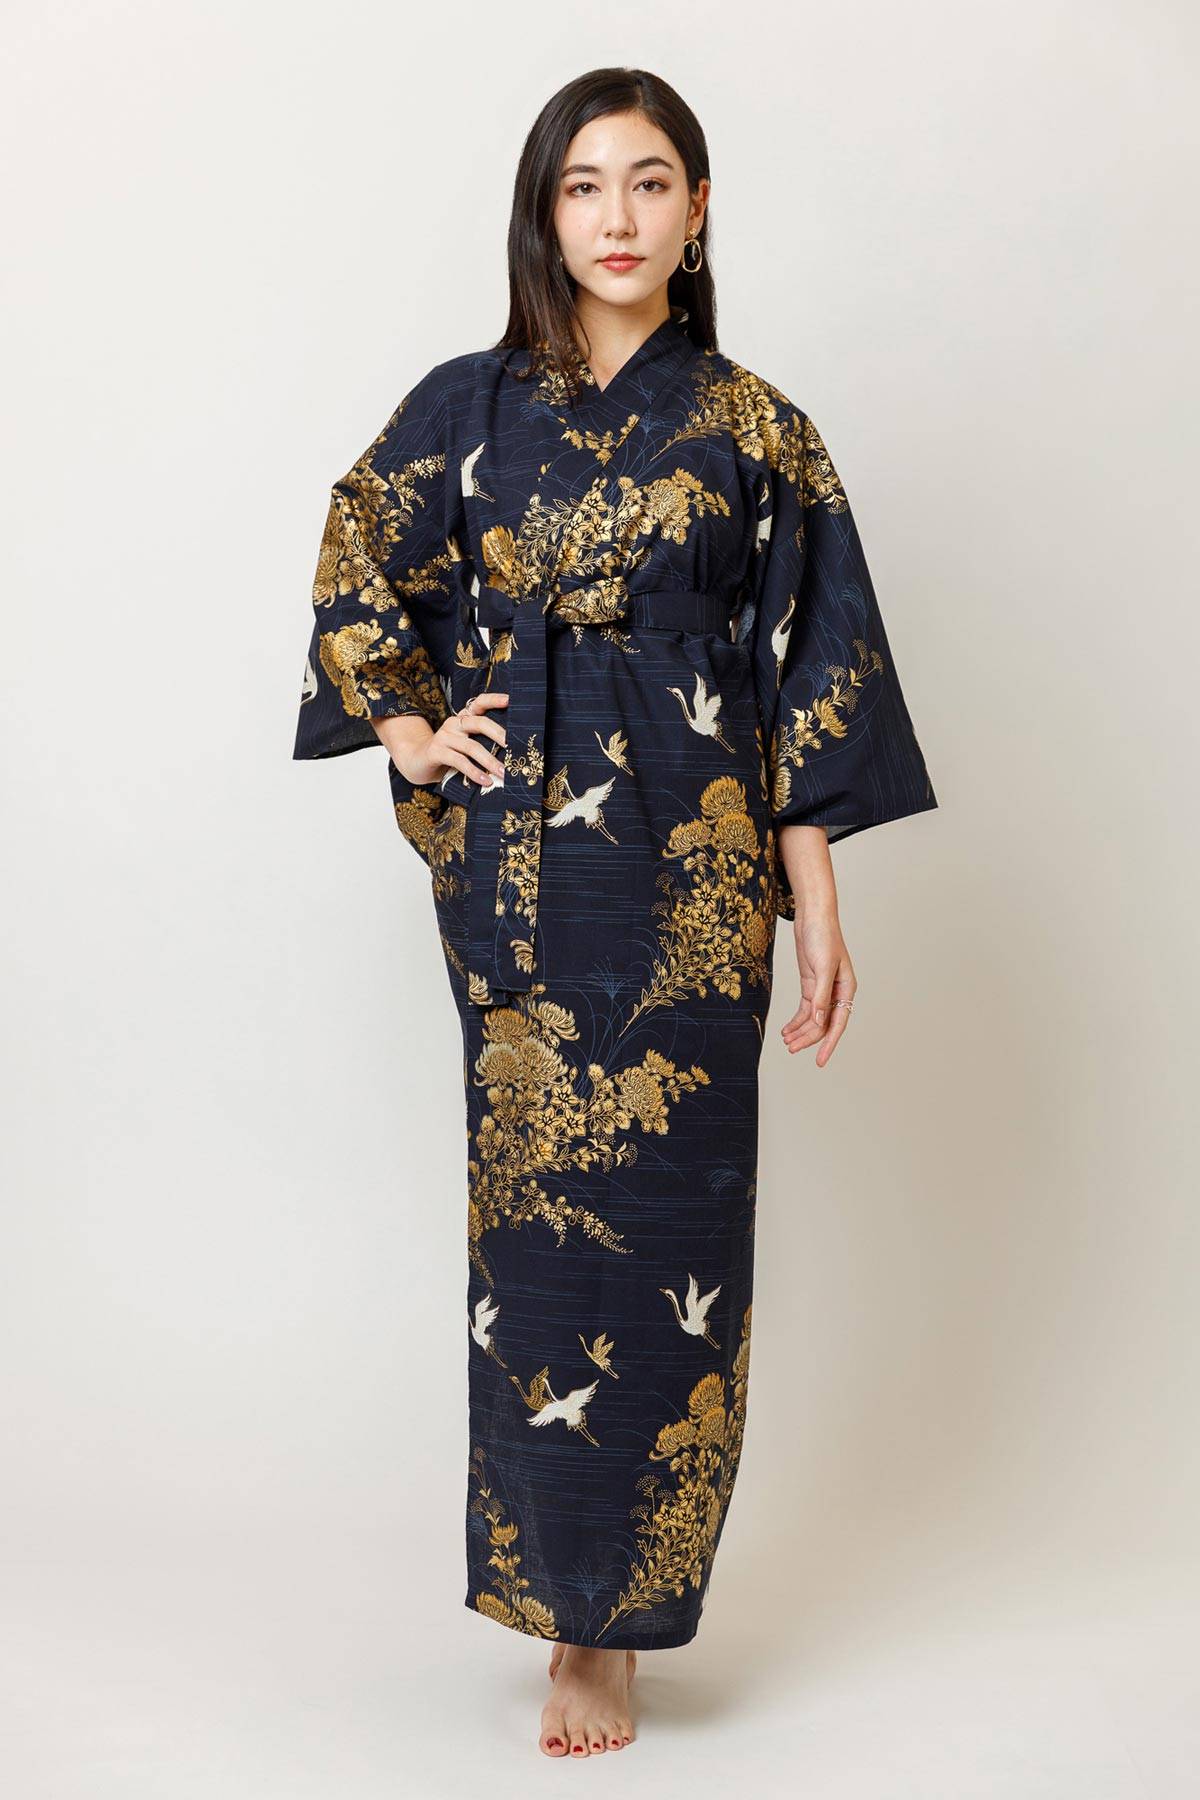 Kimono robe  Cotton robe  Kimono dress  kimono cardigan  Bathrobe Japanese gifts  dressing gown  Japanese dress Japanese clothing